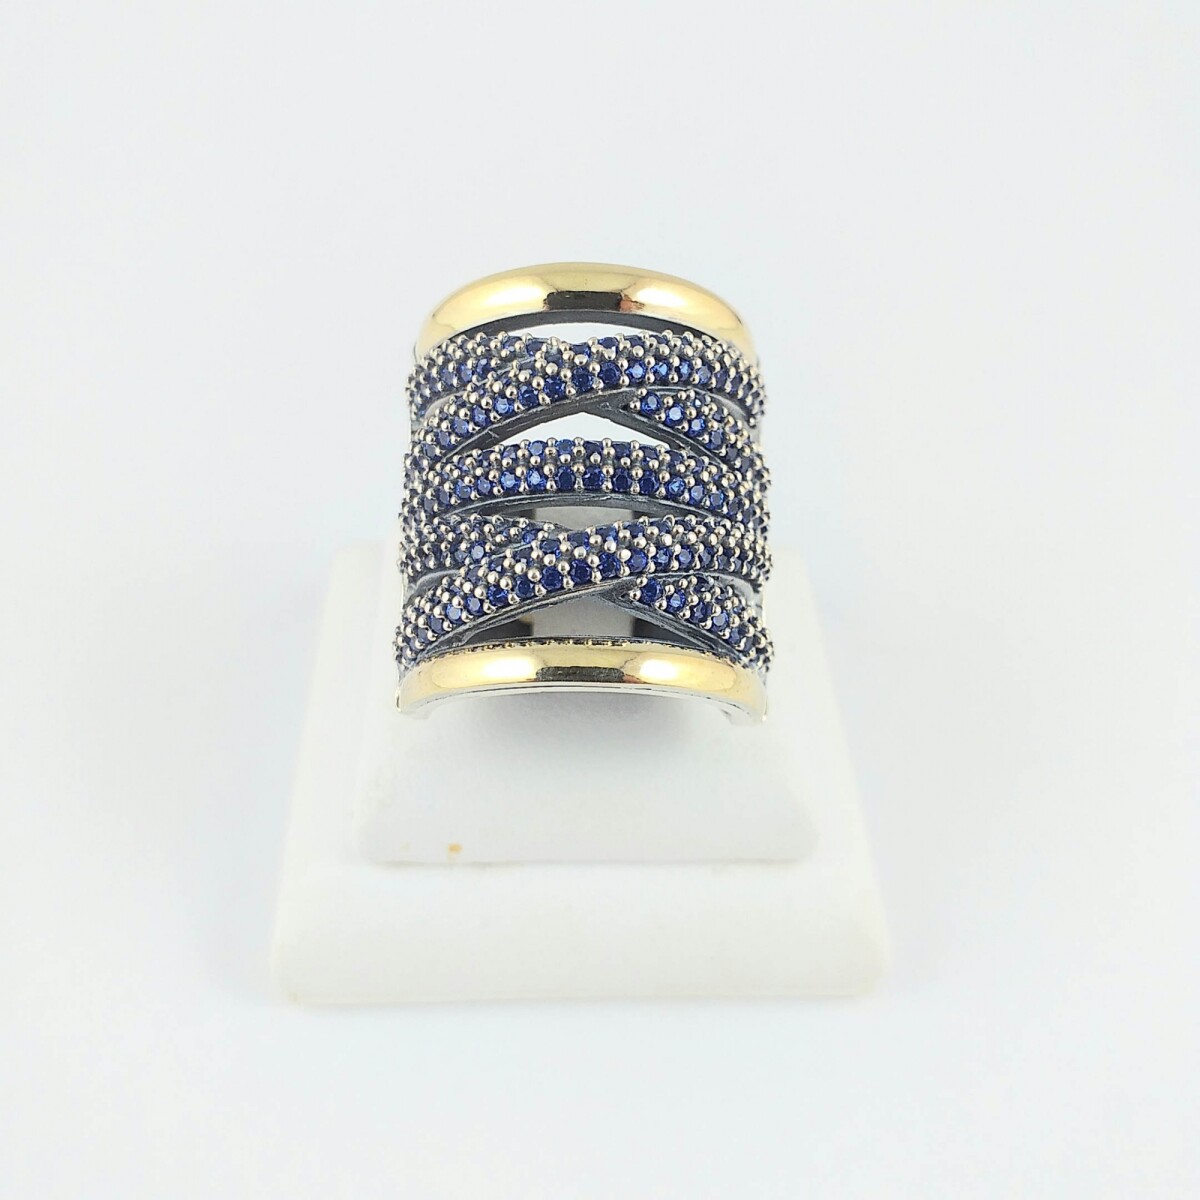 Anillo de plata 925 con detalles en double de oro 18Ktes, circonias azules, ancho sup. 20mm, diámetro interno 17mm, medida #13 